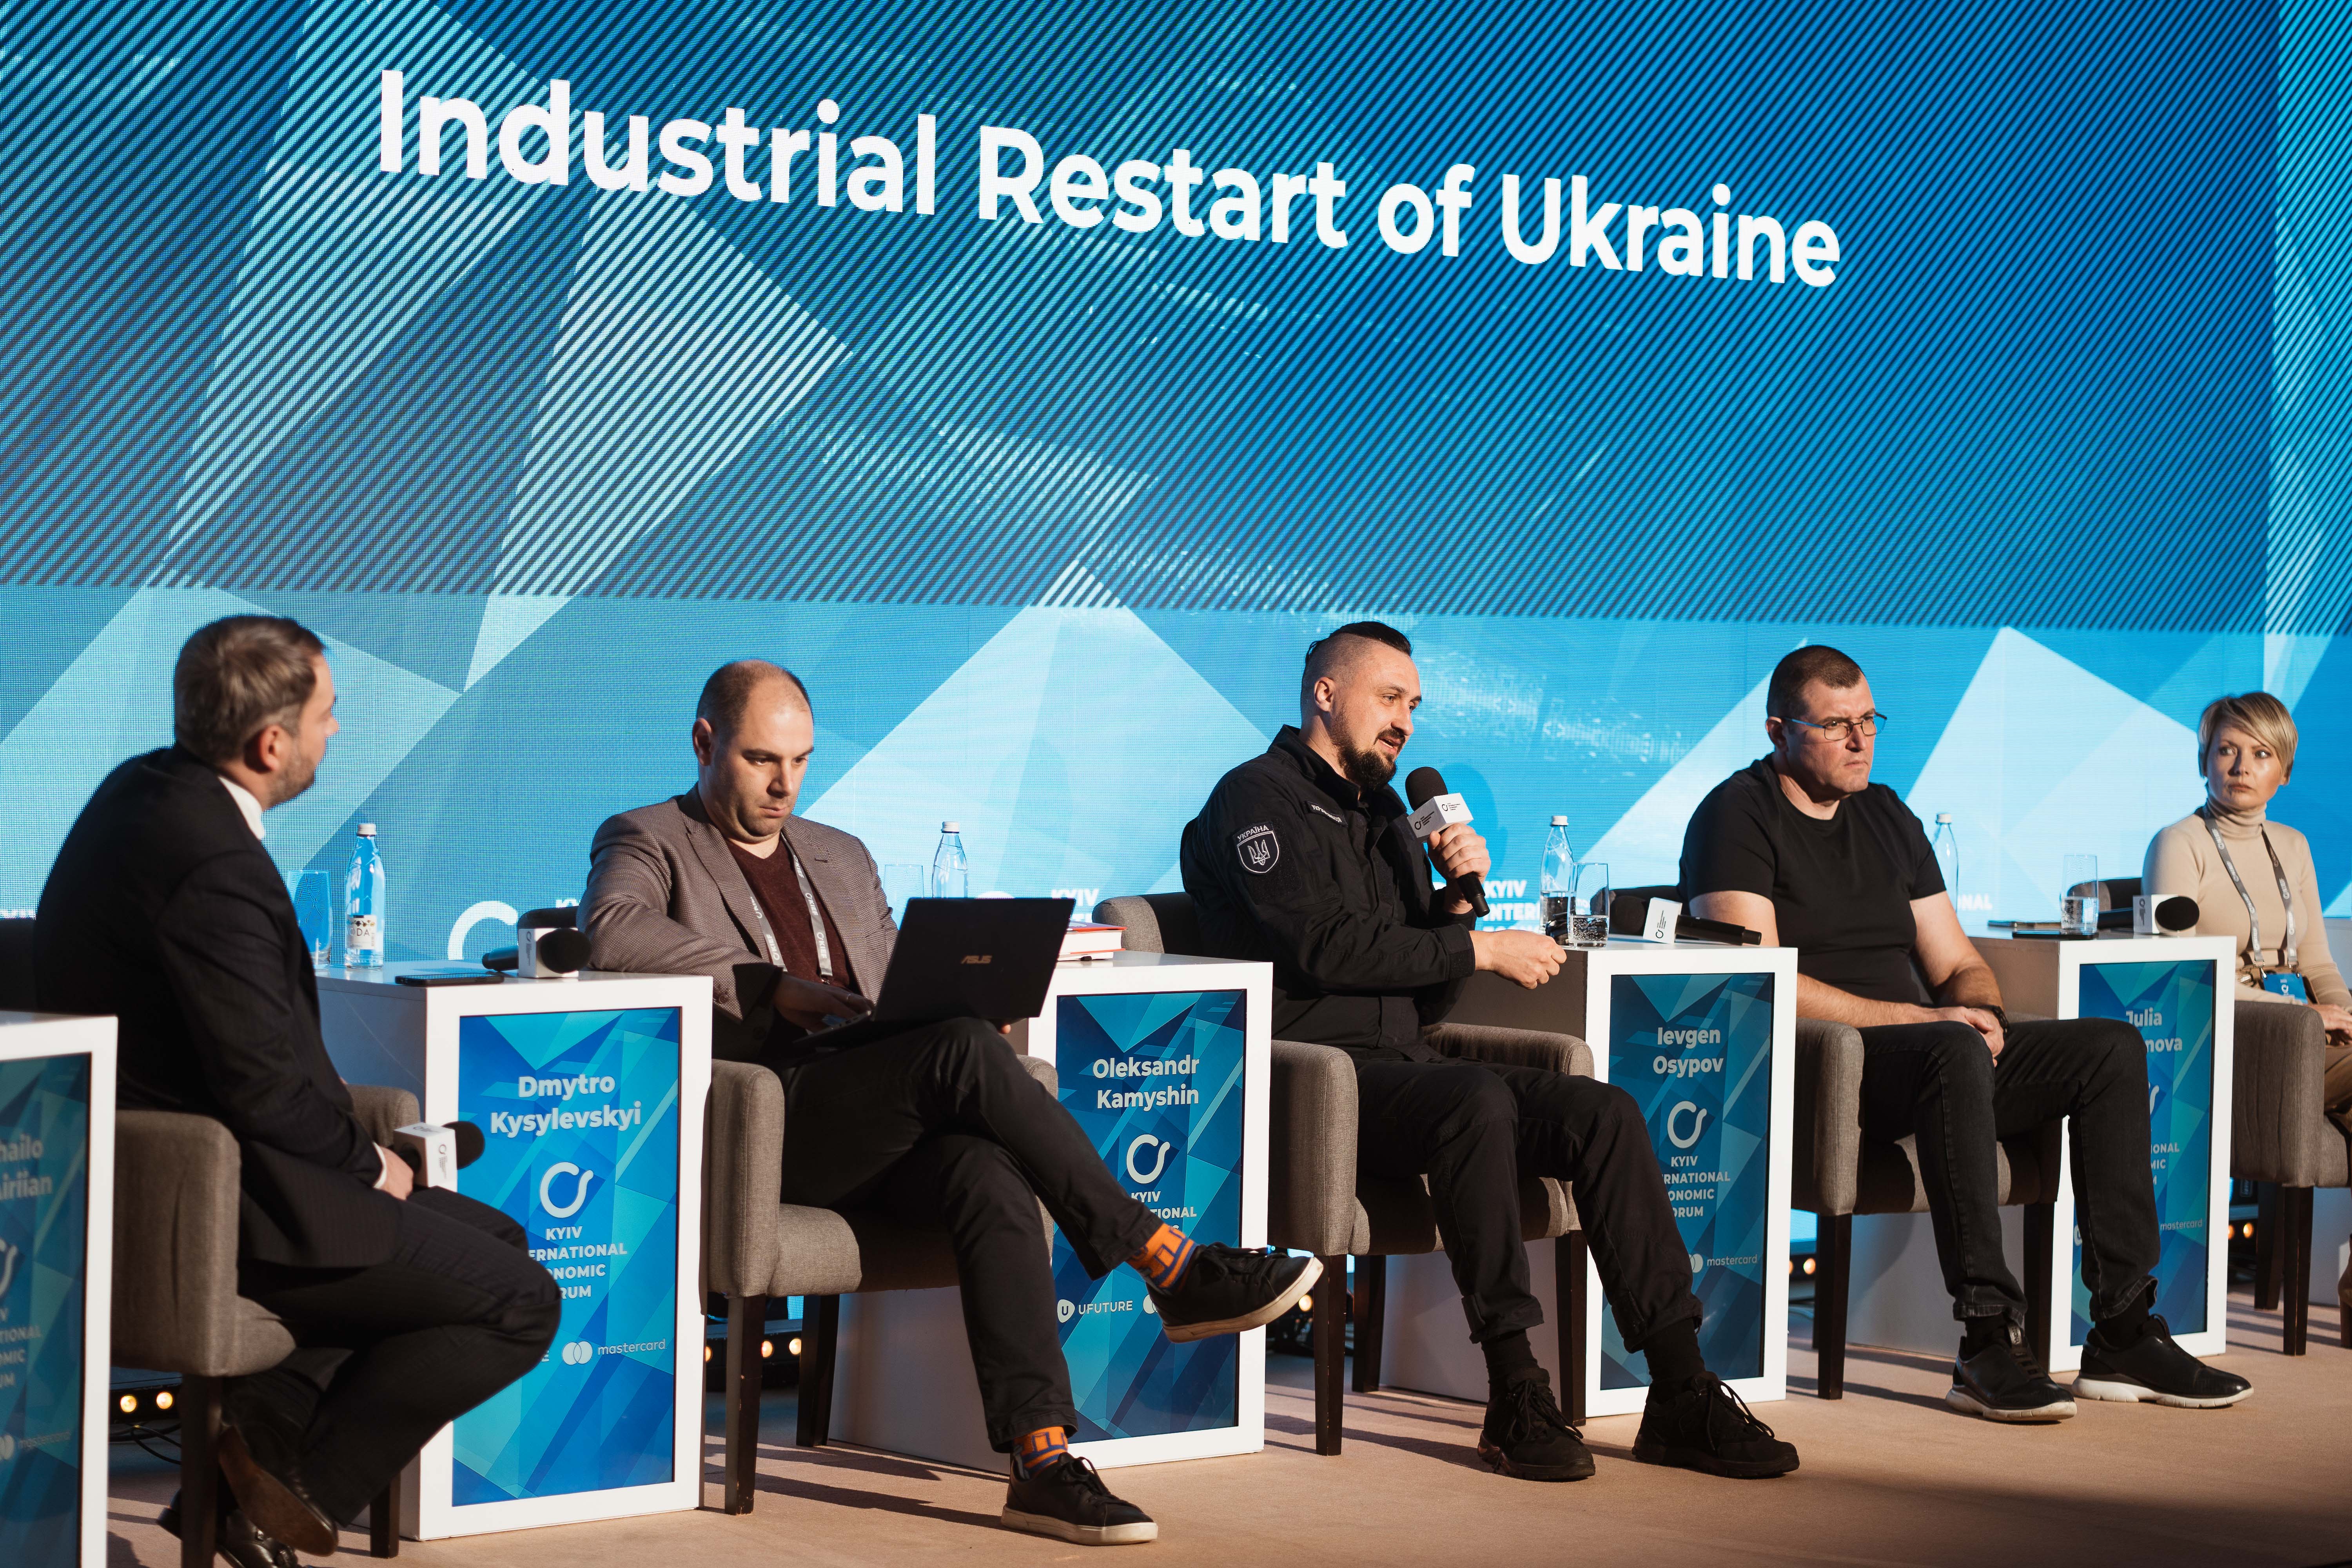  Industrial Restart of Ukraine KIEF 2022